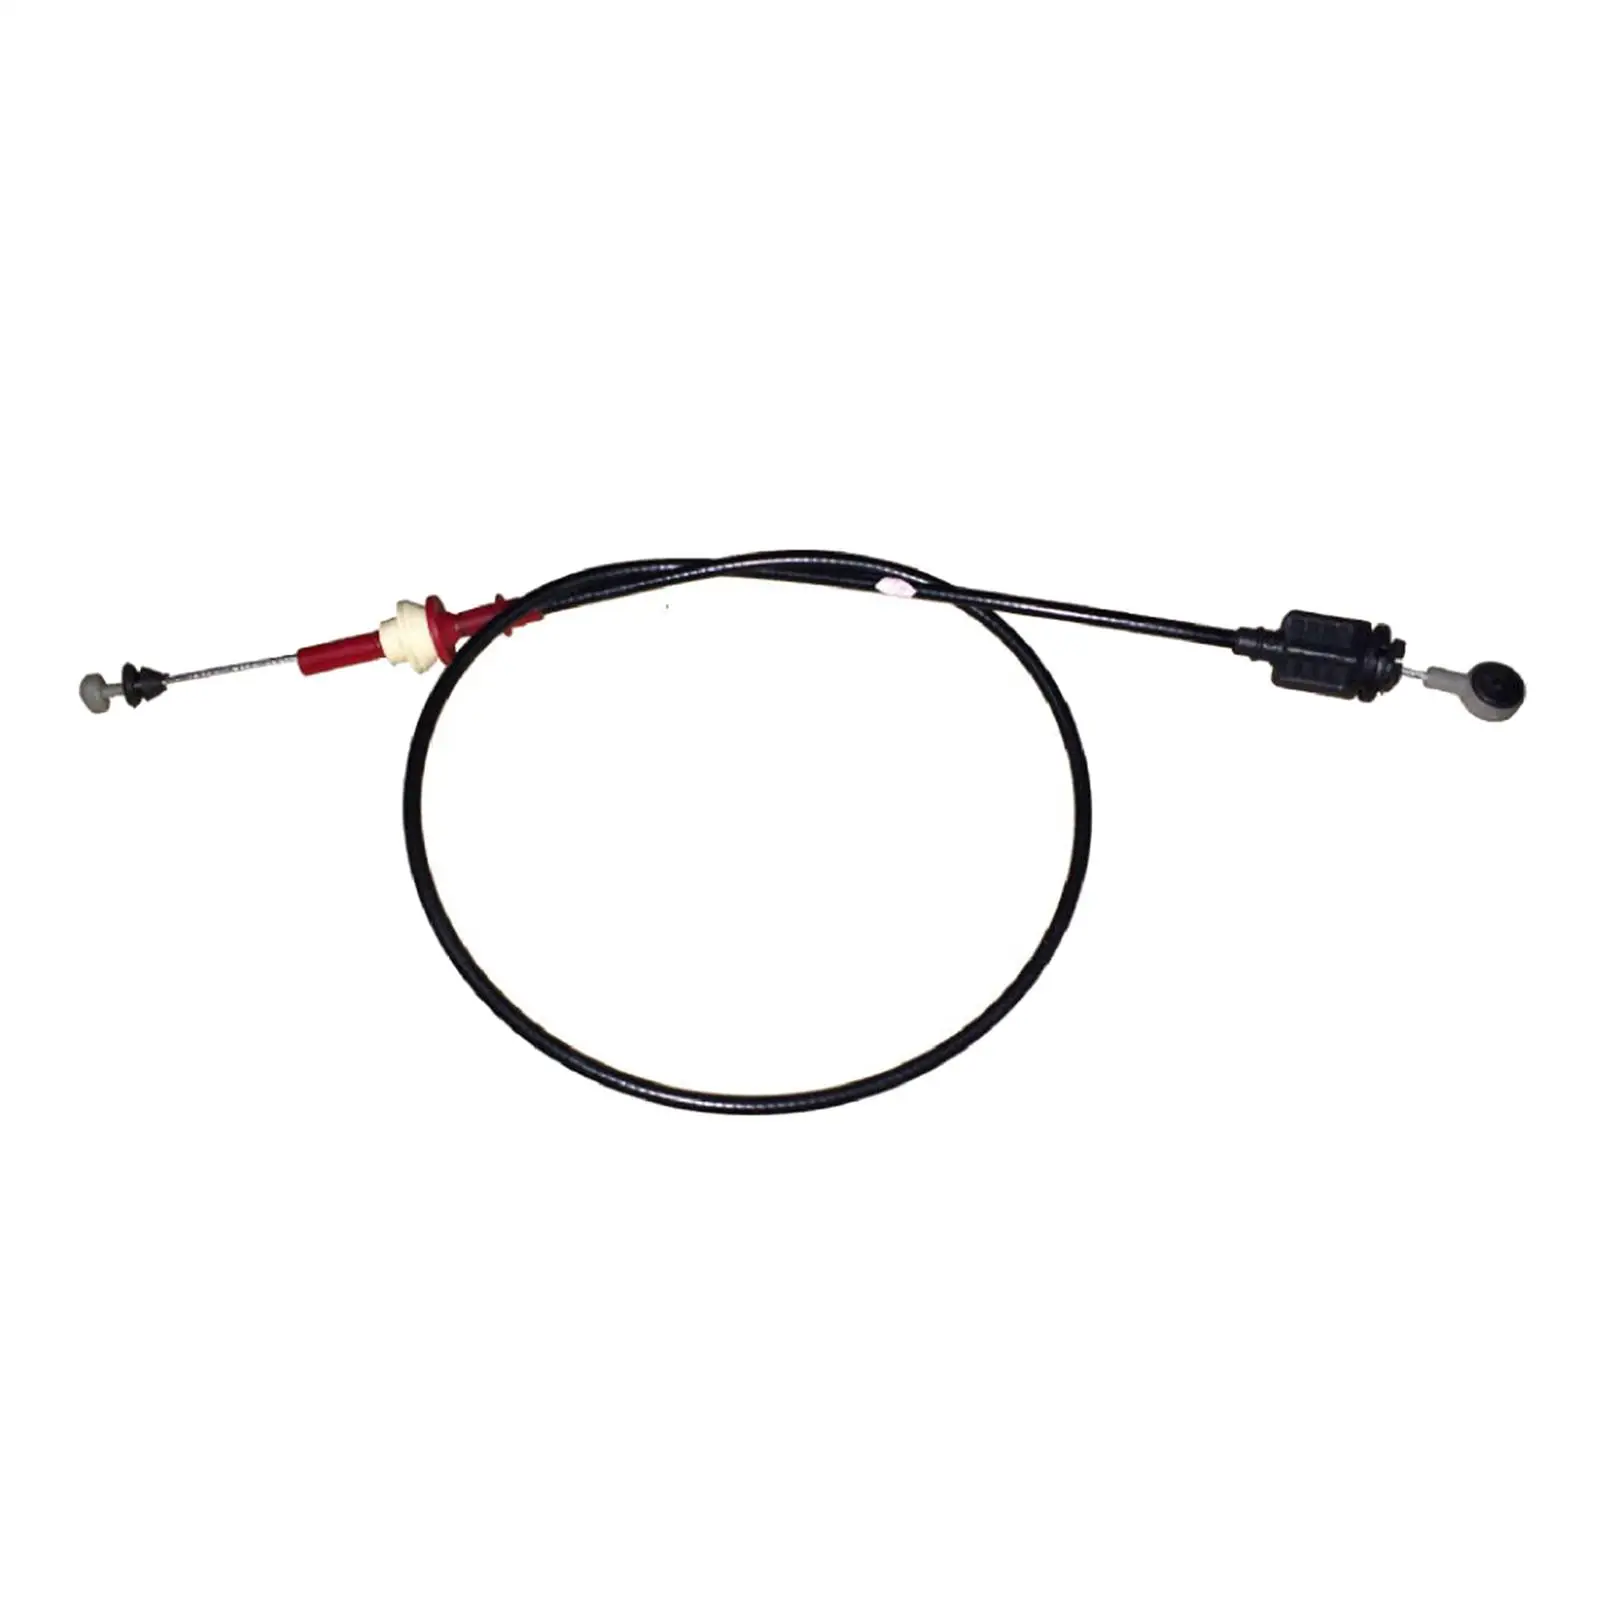 Throttle Oil Cable Line Spare Parts Replaces Premium 1S719C799DG Throttle Cable 3S719C799BA for Mondeo MK3 2003-2006 2.0T